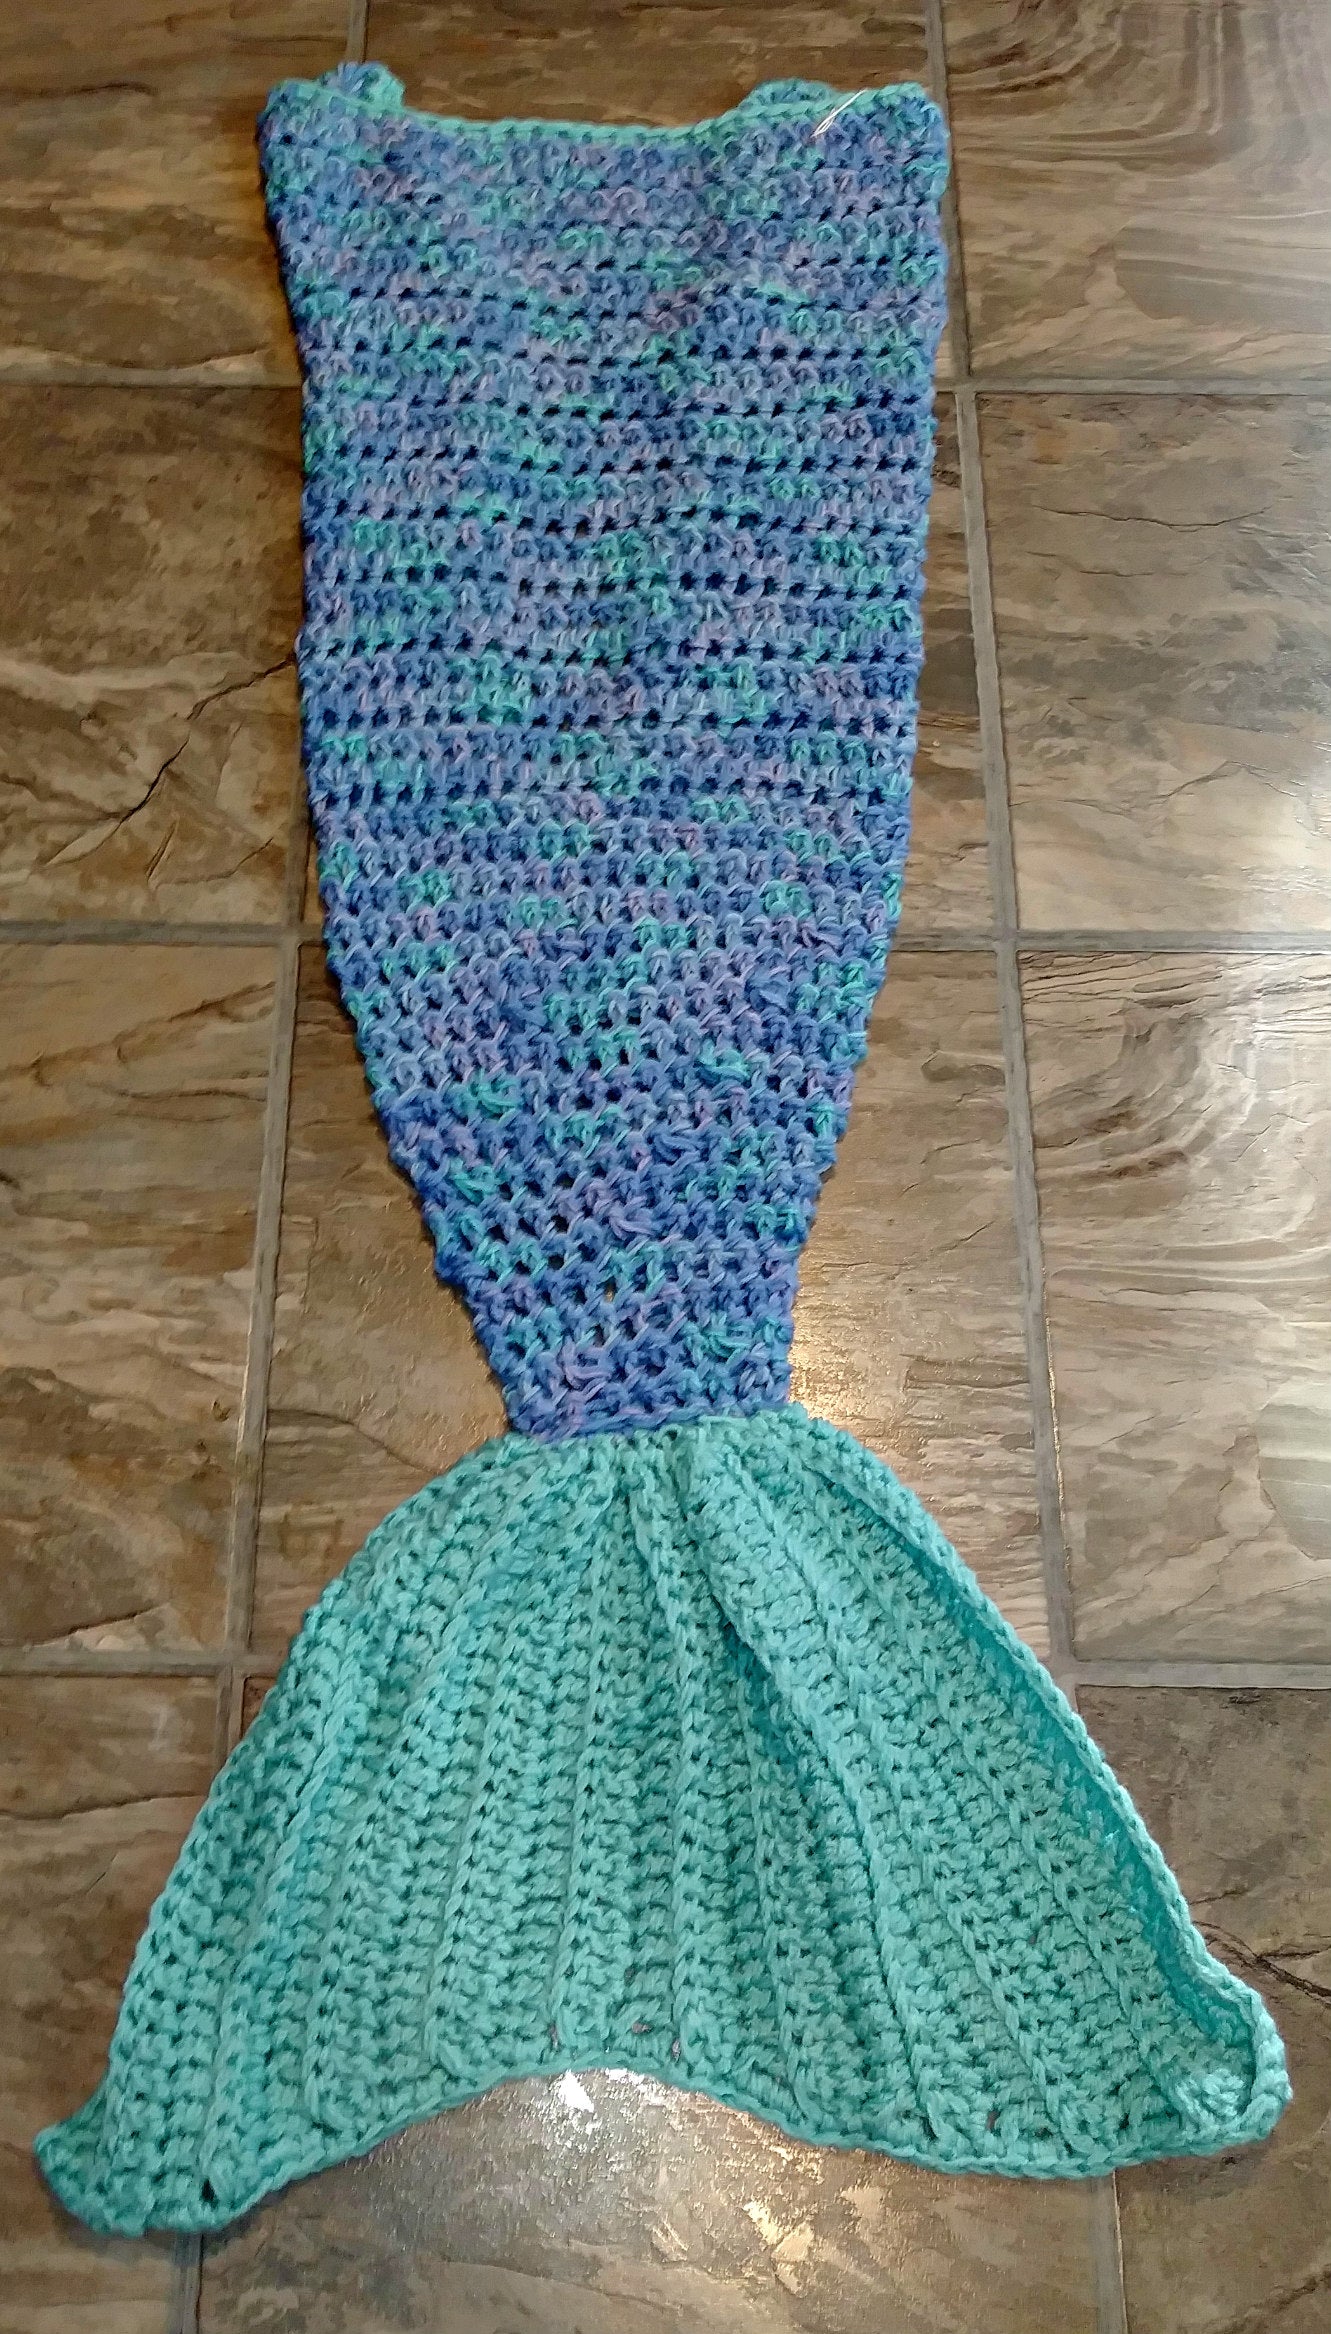 Ocean Girl's Mermaid Tail Snuggler Blanket